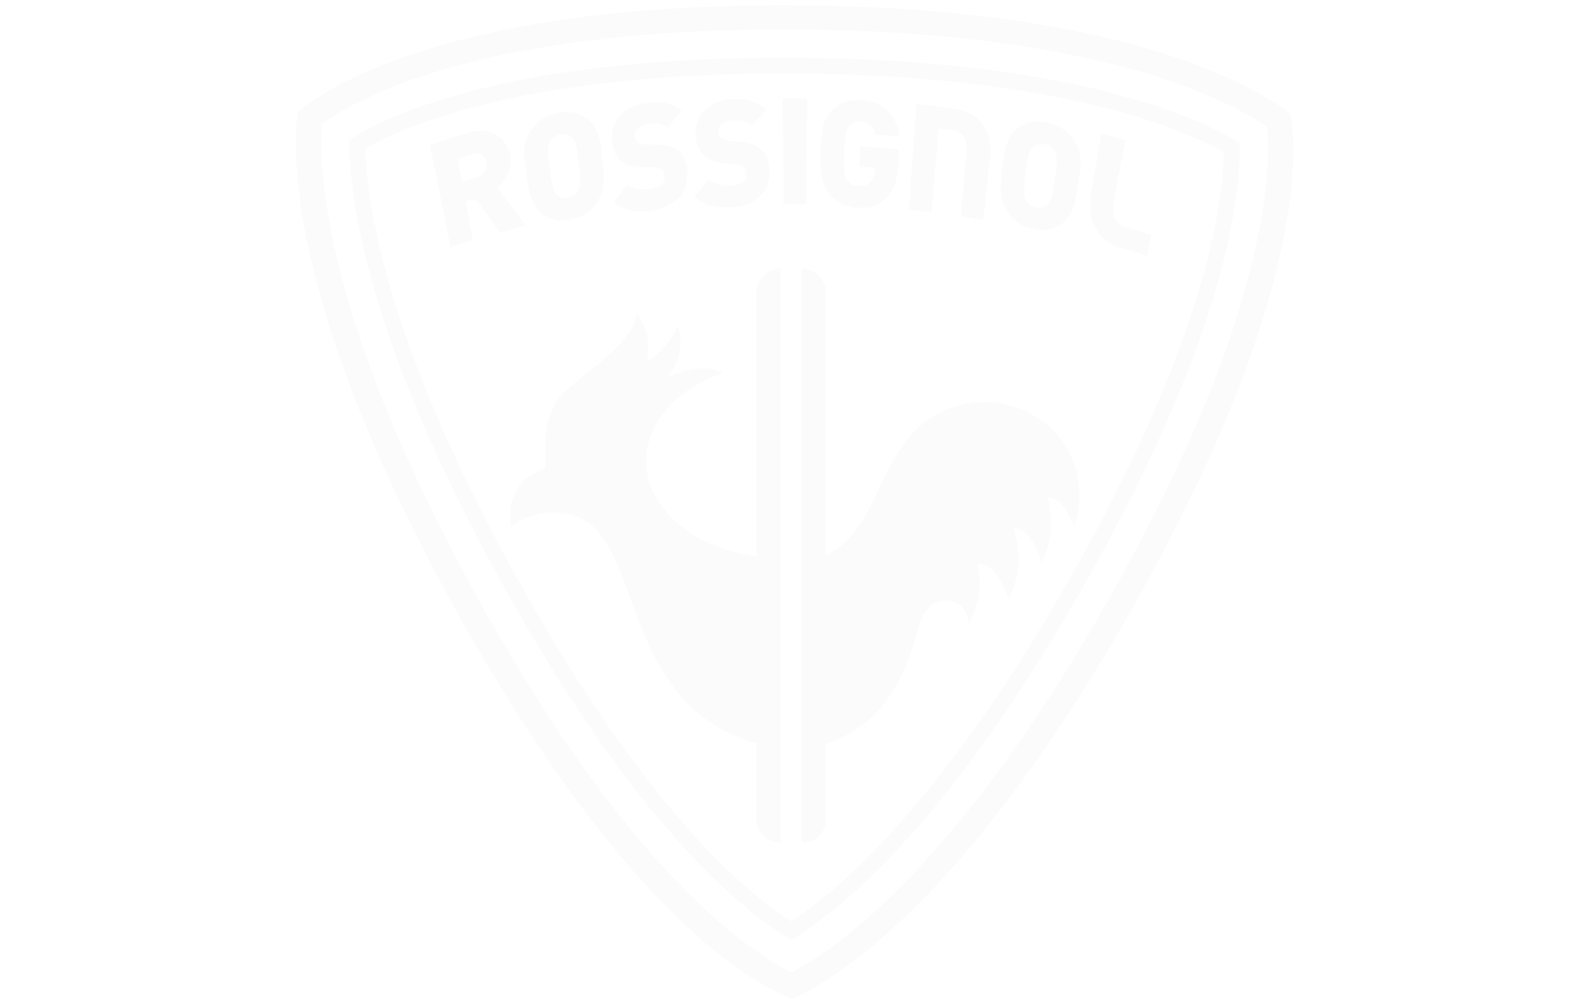 Rossignol logo wit